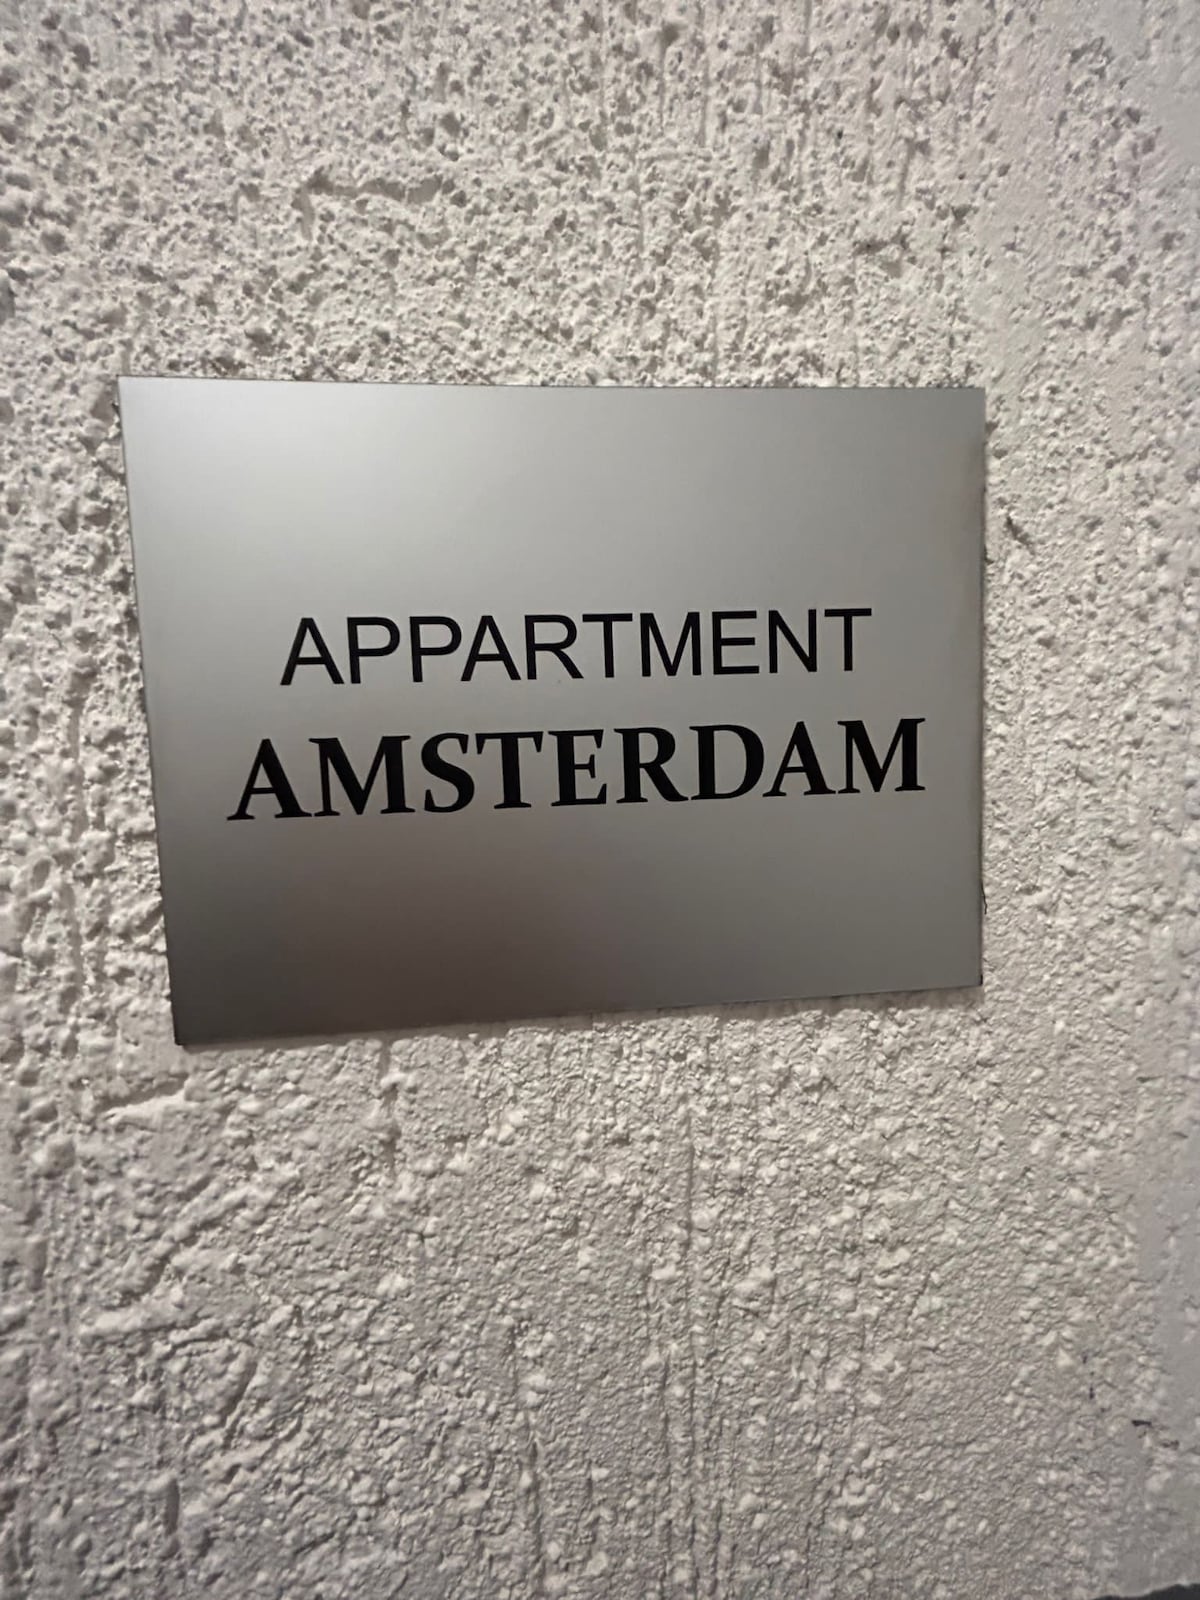 阿姆斯特丹公寓-杜塞尔多夫附近的房源